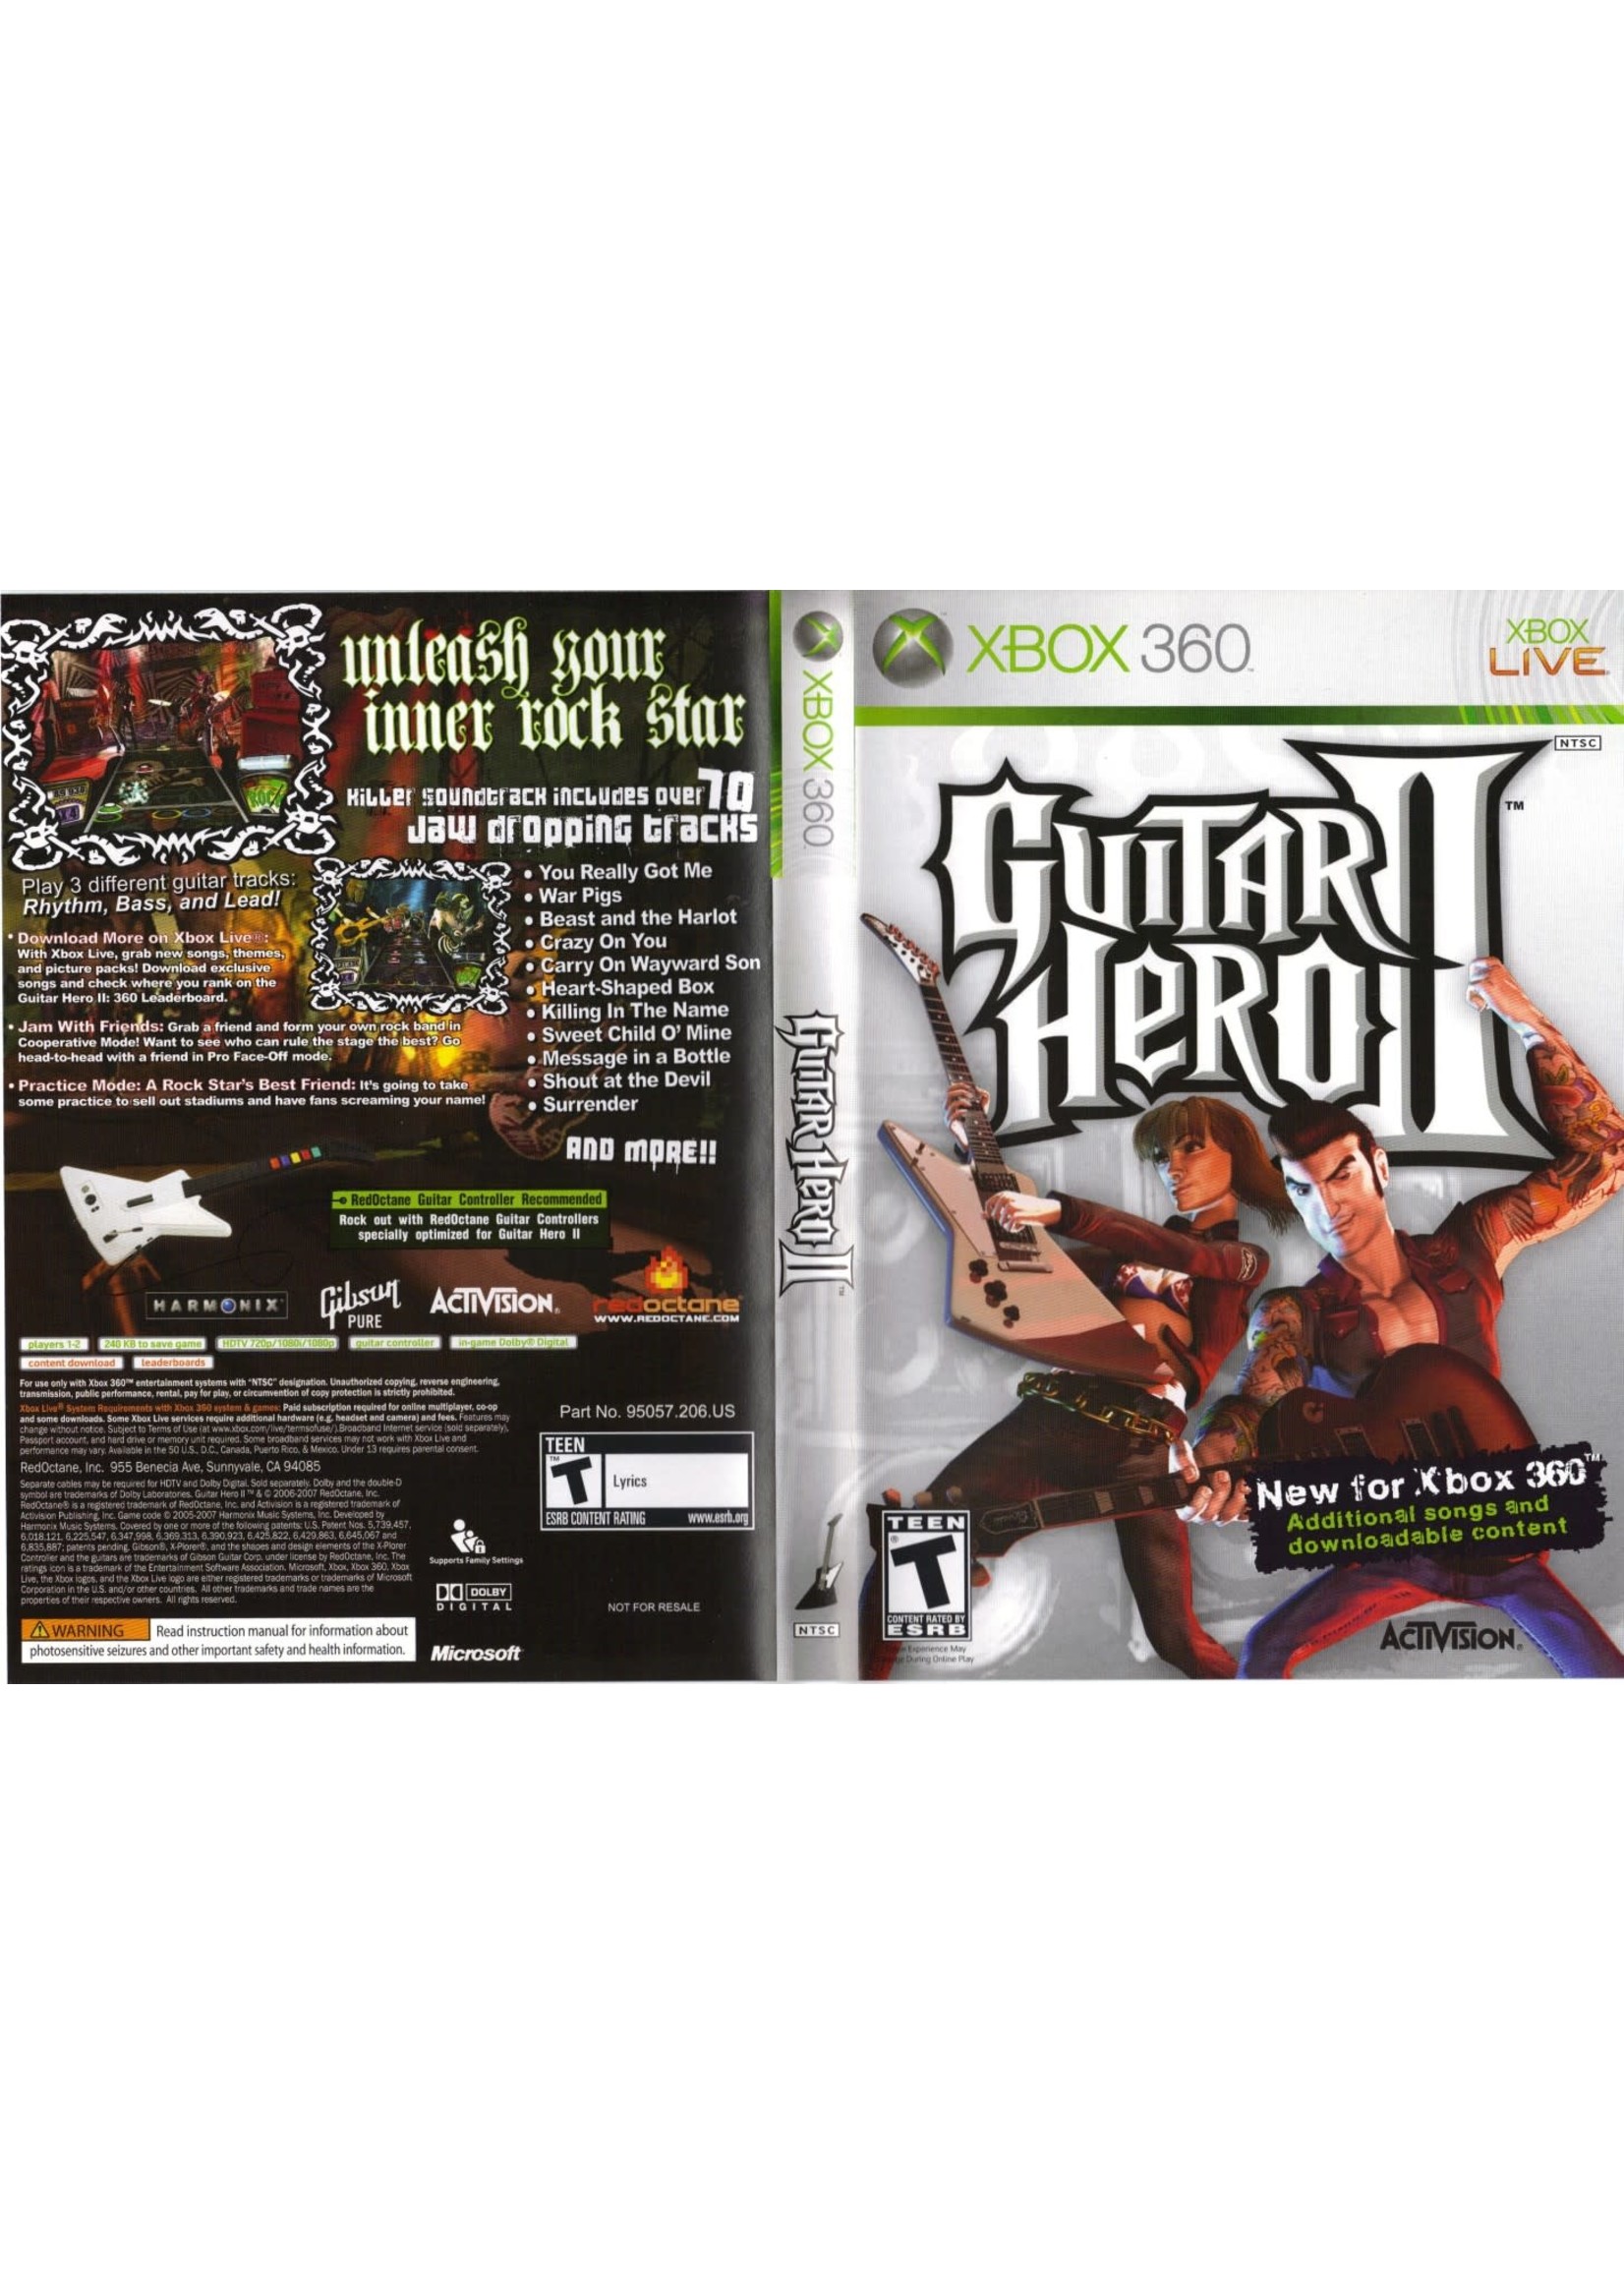 Microsoft Xbox 360 Guitar Hero II